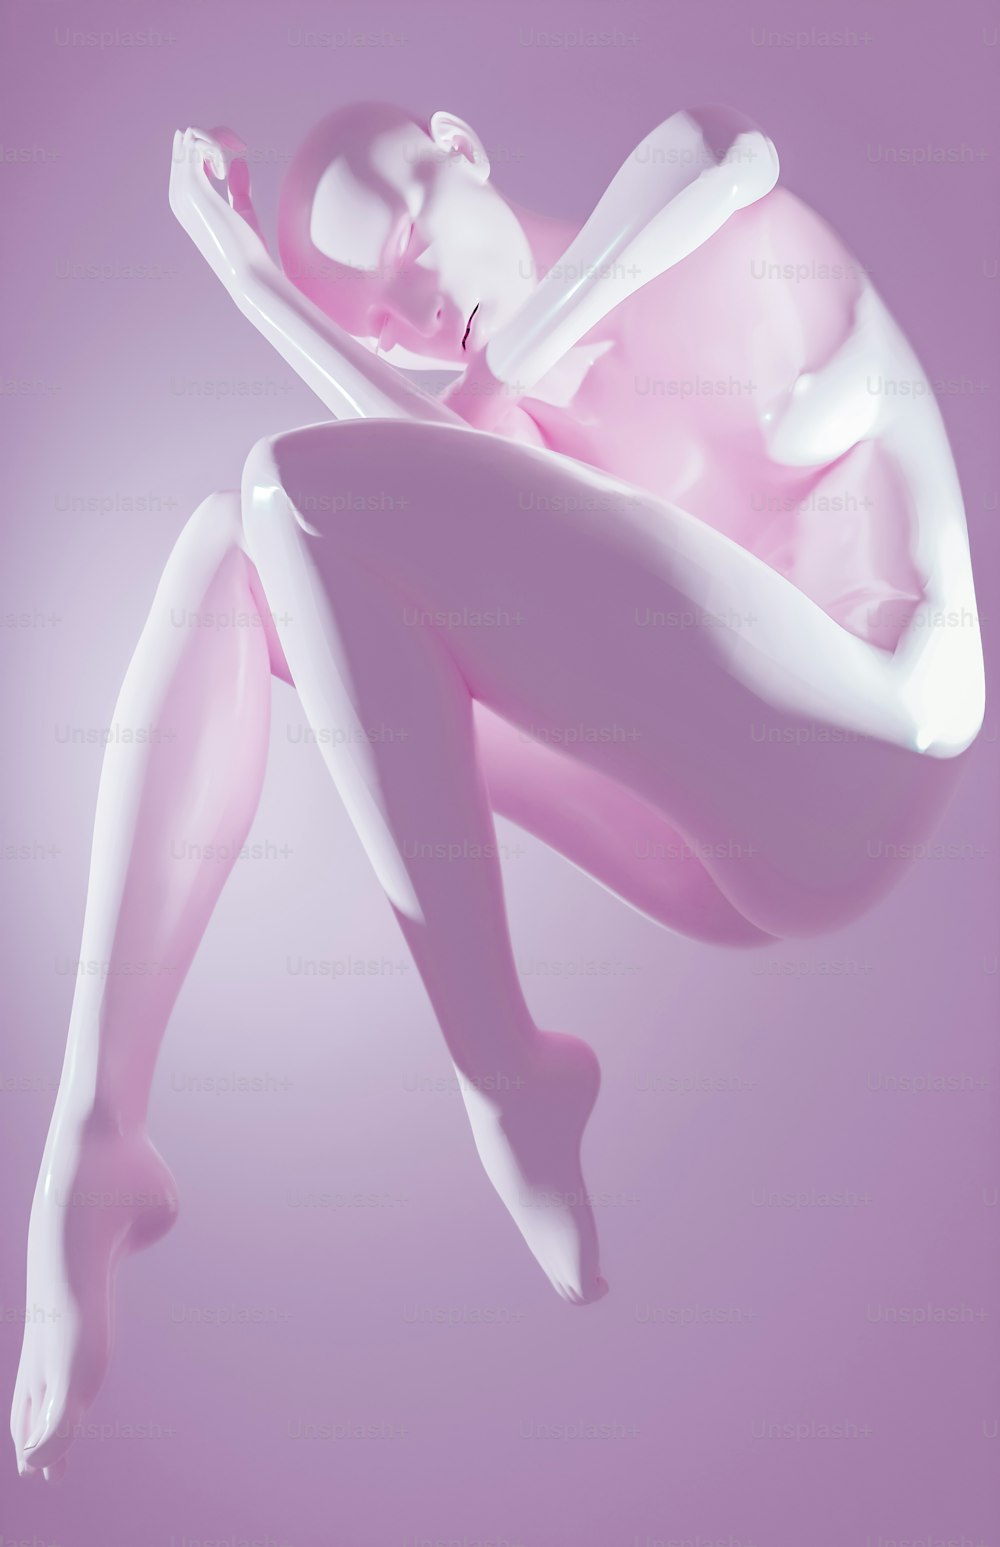 Ein rosa-weißes Foto einer Frau, die in der Luft schwebt